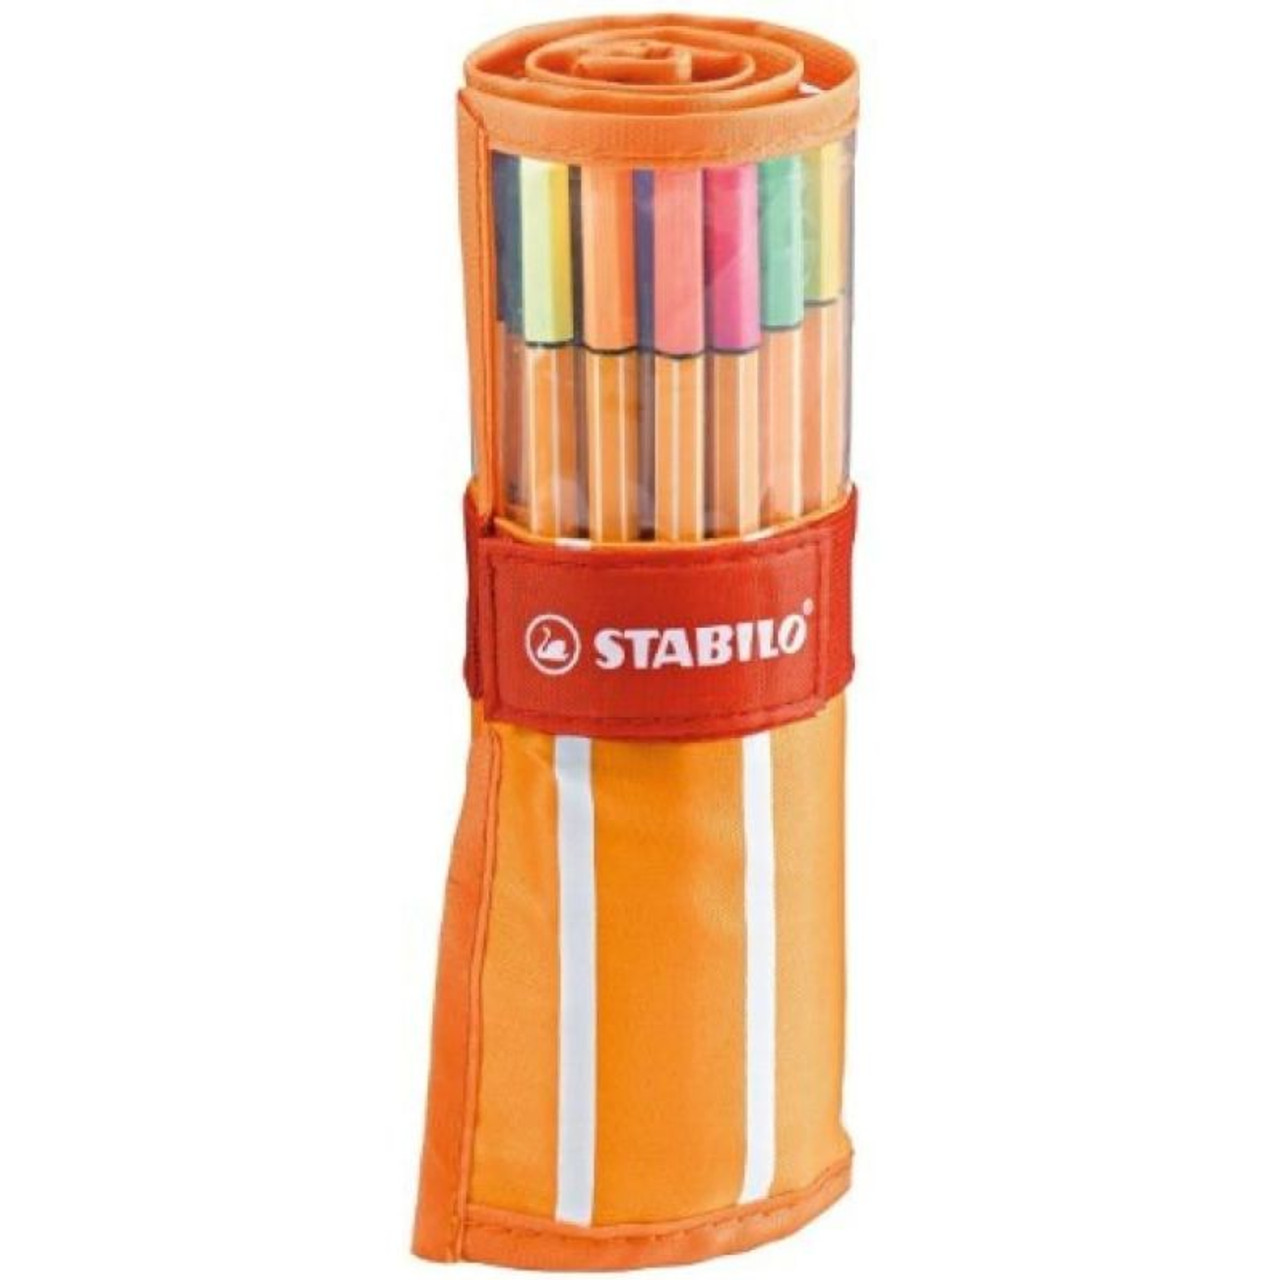  STABILO Point 88 Fineliner Pens, 0.4 mm - 30-Color Set